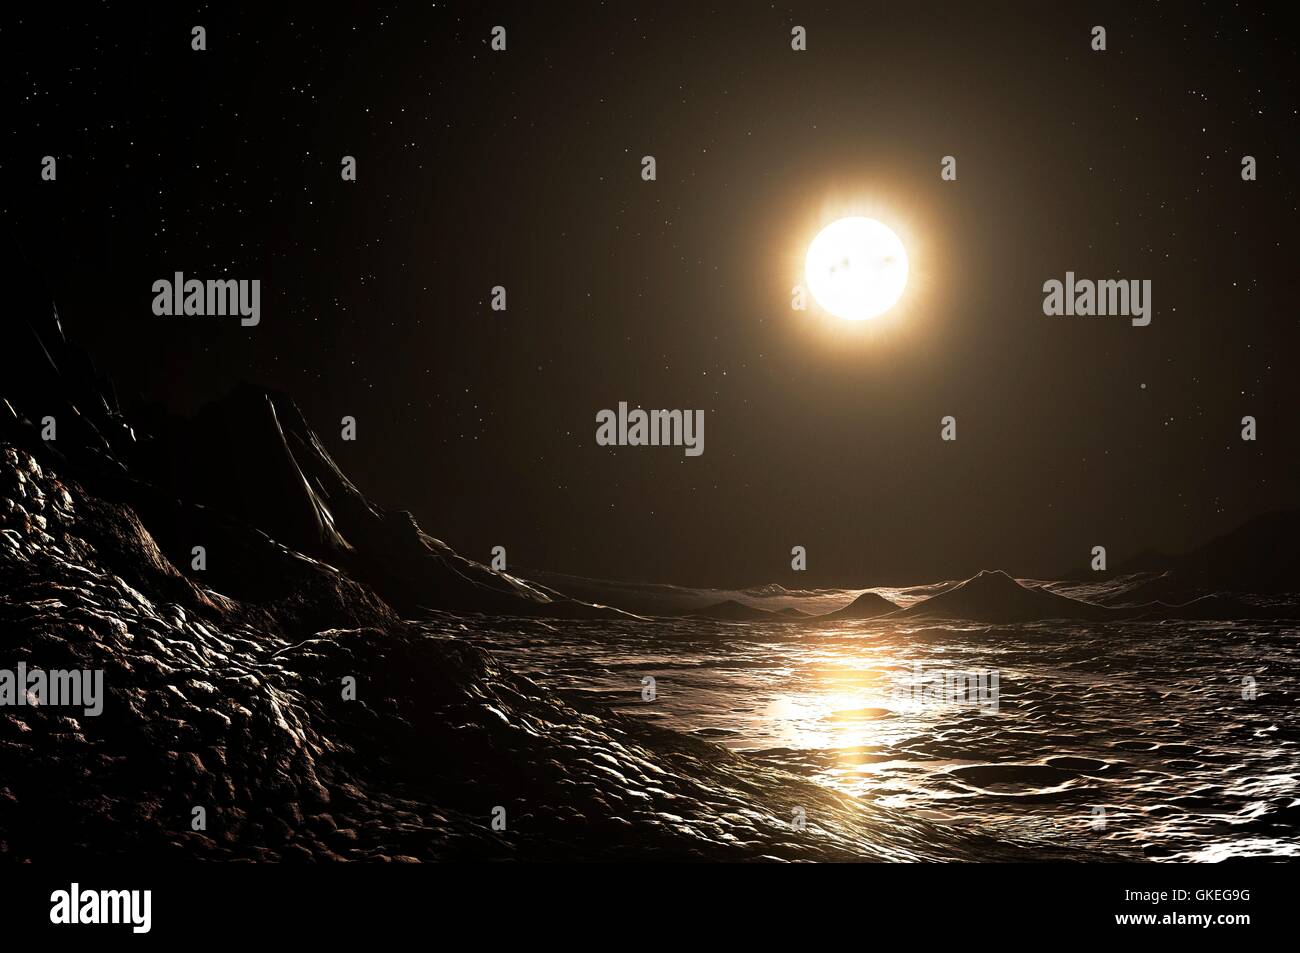 Surface de mercure. L'oeuvre de l'ordinateur montrant la surface de la planète Mercure avec le soleil au-dessus. À son plus proche, le mercure n'est que de 46 millions de kilomètres du Soleil, à moins d'un tiers de la distance Terre-Soleil. La température de surface extrêmes sont le plus grand dans le système solaire, allant (jour-nuit) de 400 à -170 degrés Celsius. Certains de mercure est fin 'atmosphereâ€™ est de capturer l'eau qui tue, tandis que d'autres gaz sont libérés par des procédés chimiques sur la surface rocheuse de la planète. Banque D'Images